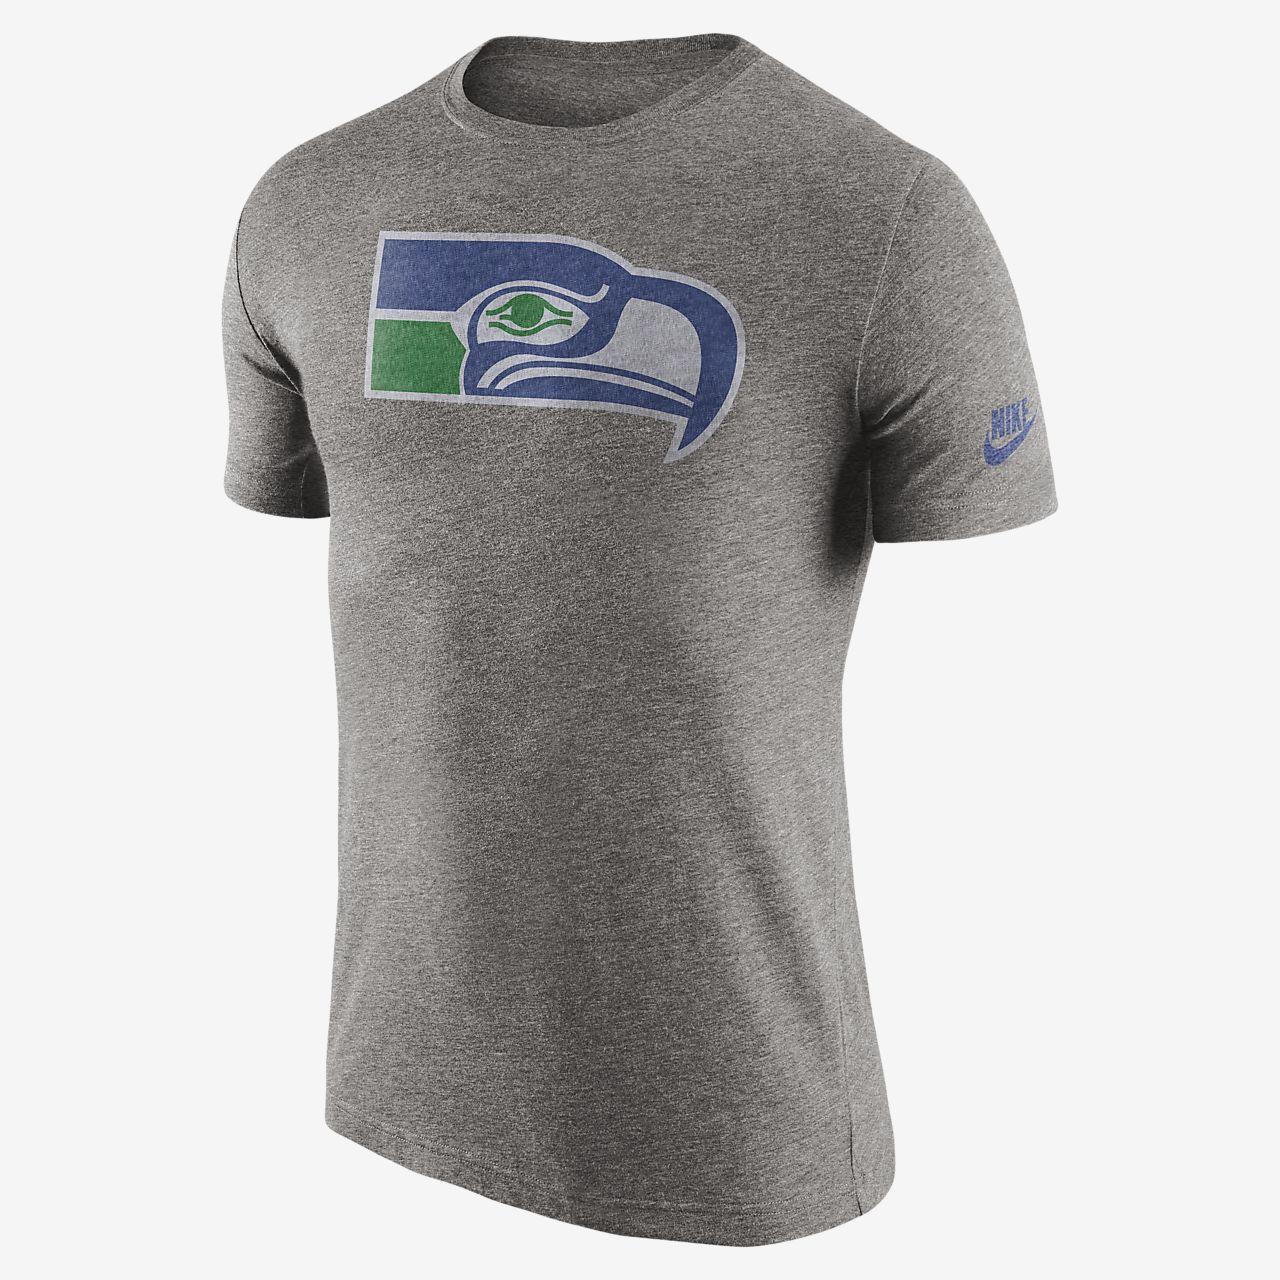 NFL Seahawks Logo - Nike Historic Logo (NFL Seahawks) Men's T Shirt. Nike.com